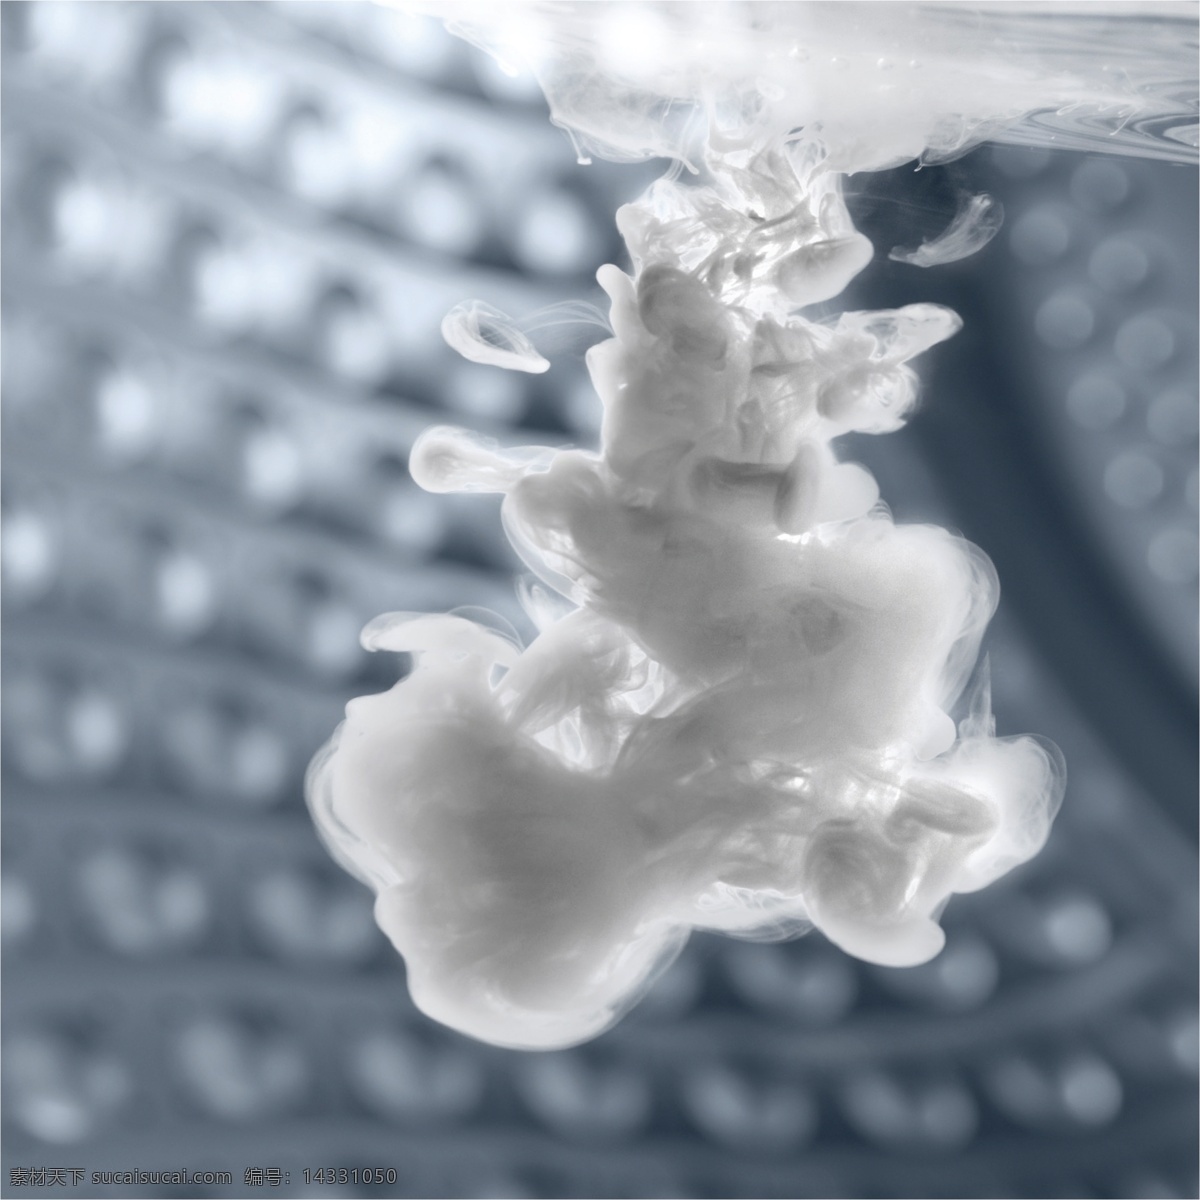 白色 液体 水中 扩散 洗衣液 洗衣粉 药水 药剂 滚筒 摄影作品 现代科技 工业生产